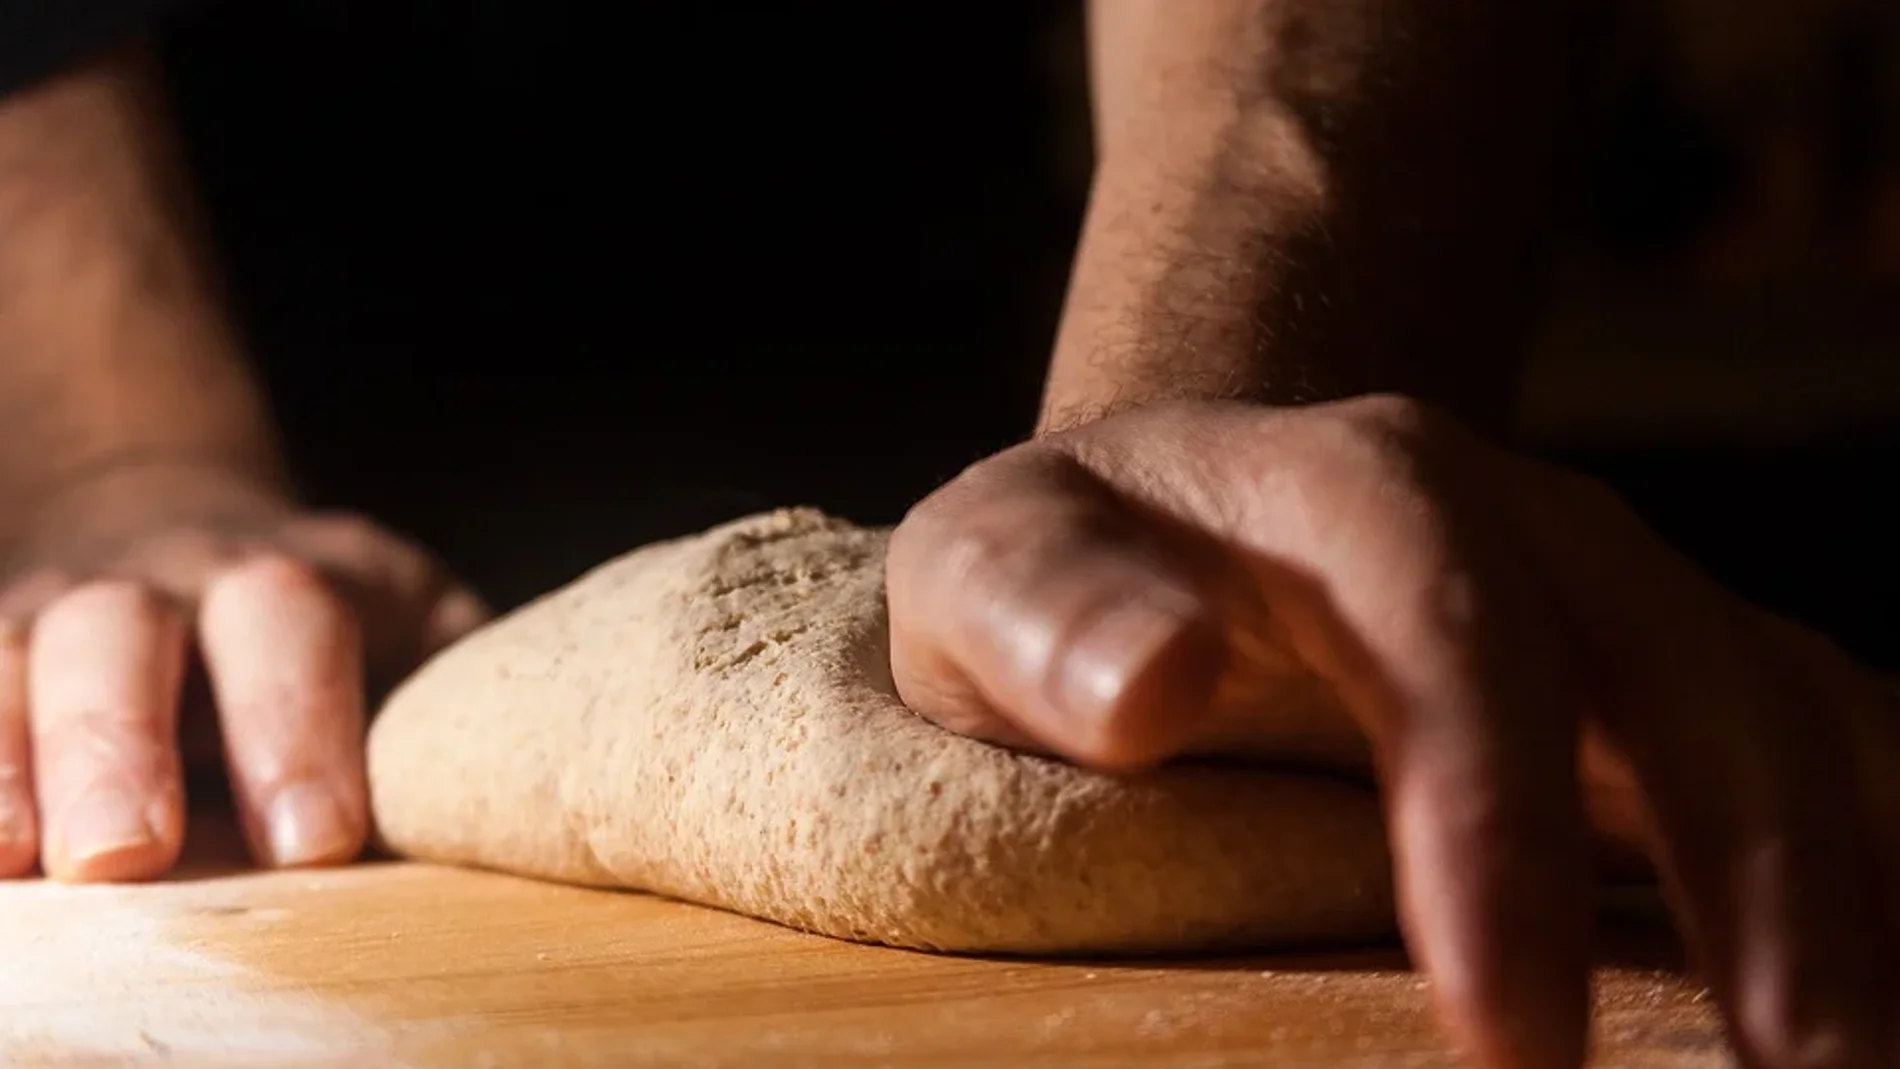 Lo primero de todo es que para hacer pan casero y artesano no hay que tener prisa, el pan necesita tiempo para fermentar y desarrollar sus sabores, cuanto más tiempo repose el pan (dentro de un límite...), mejor sabrá y sentará.